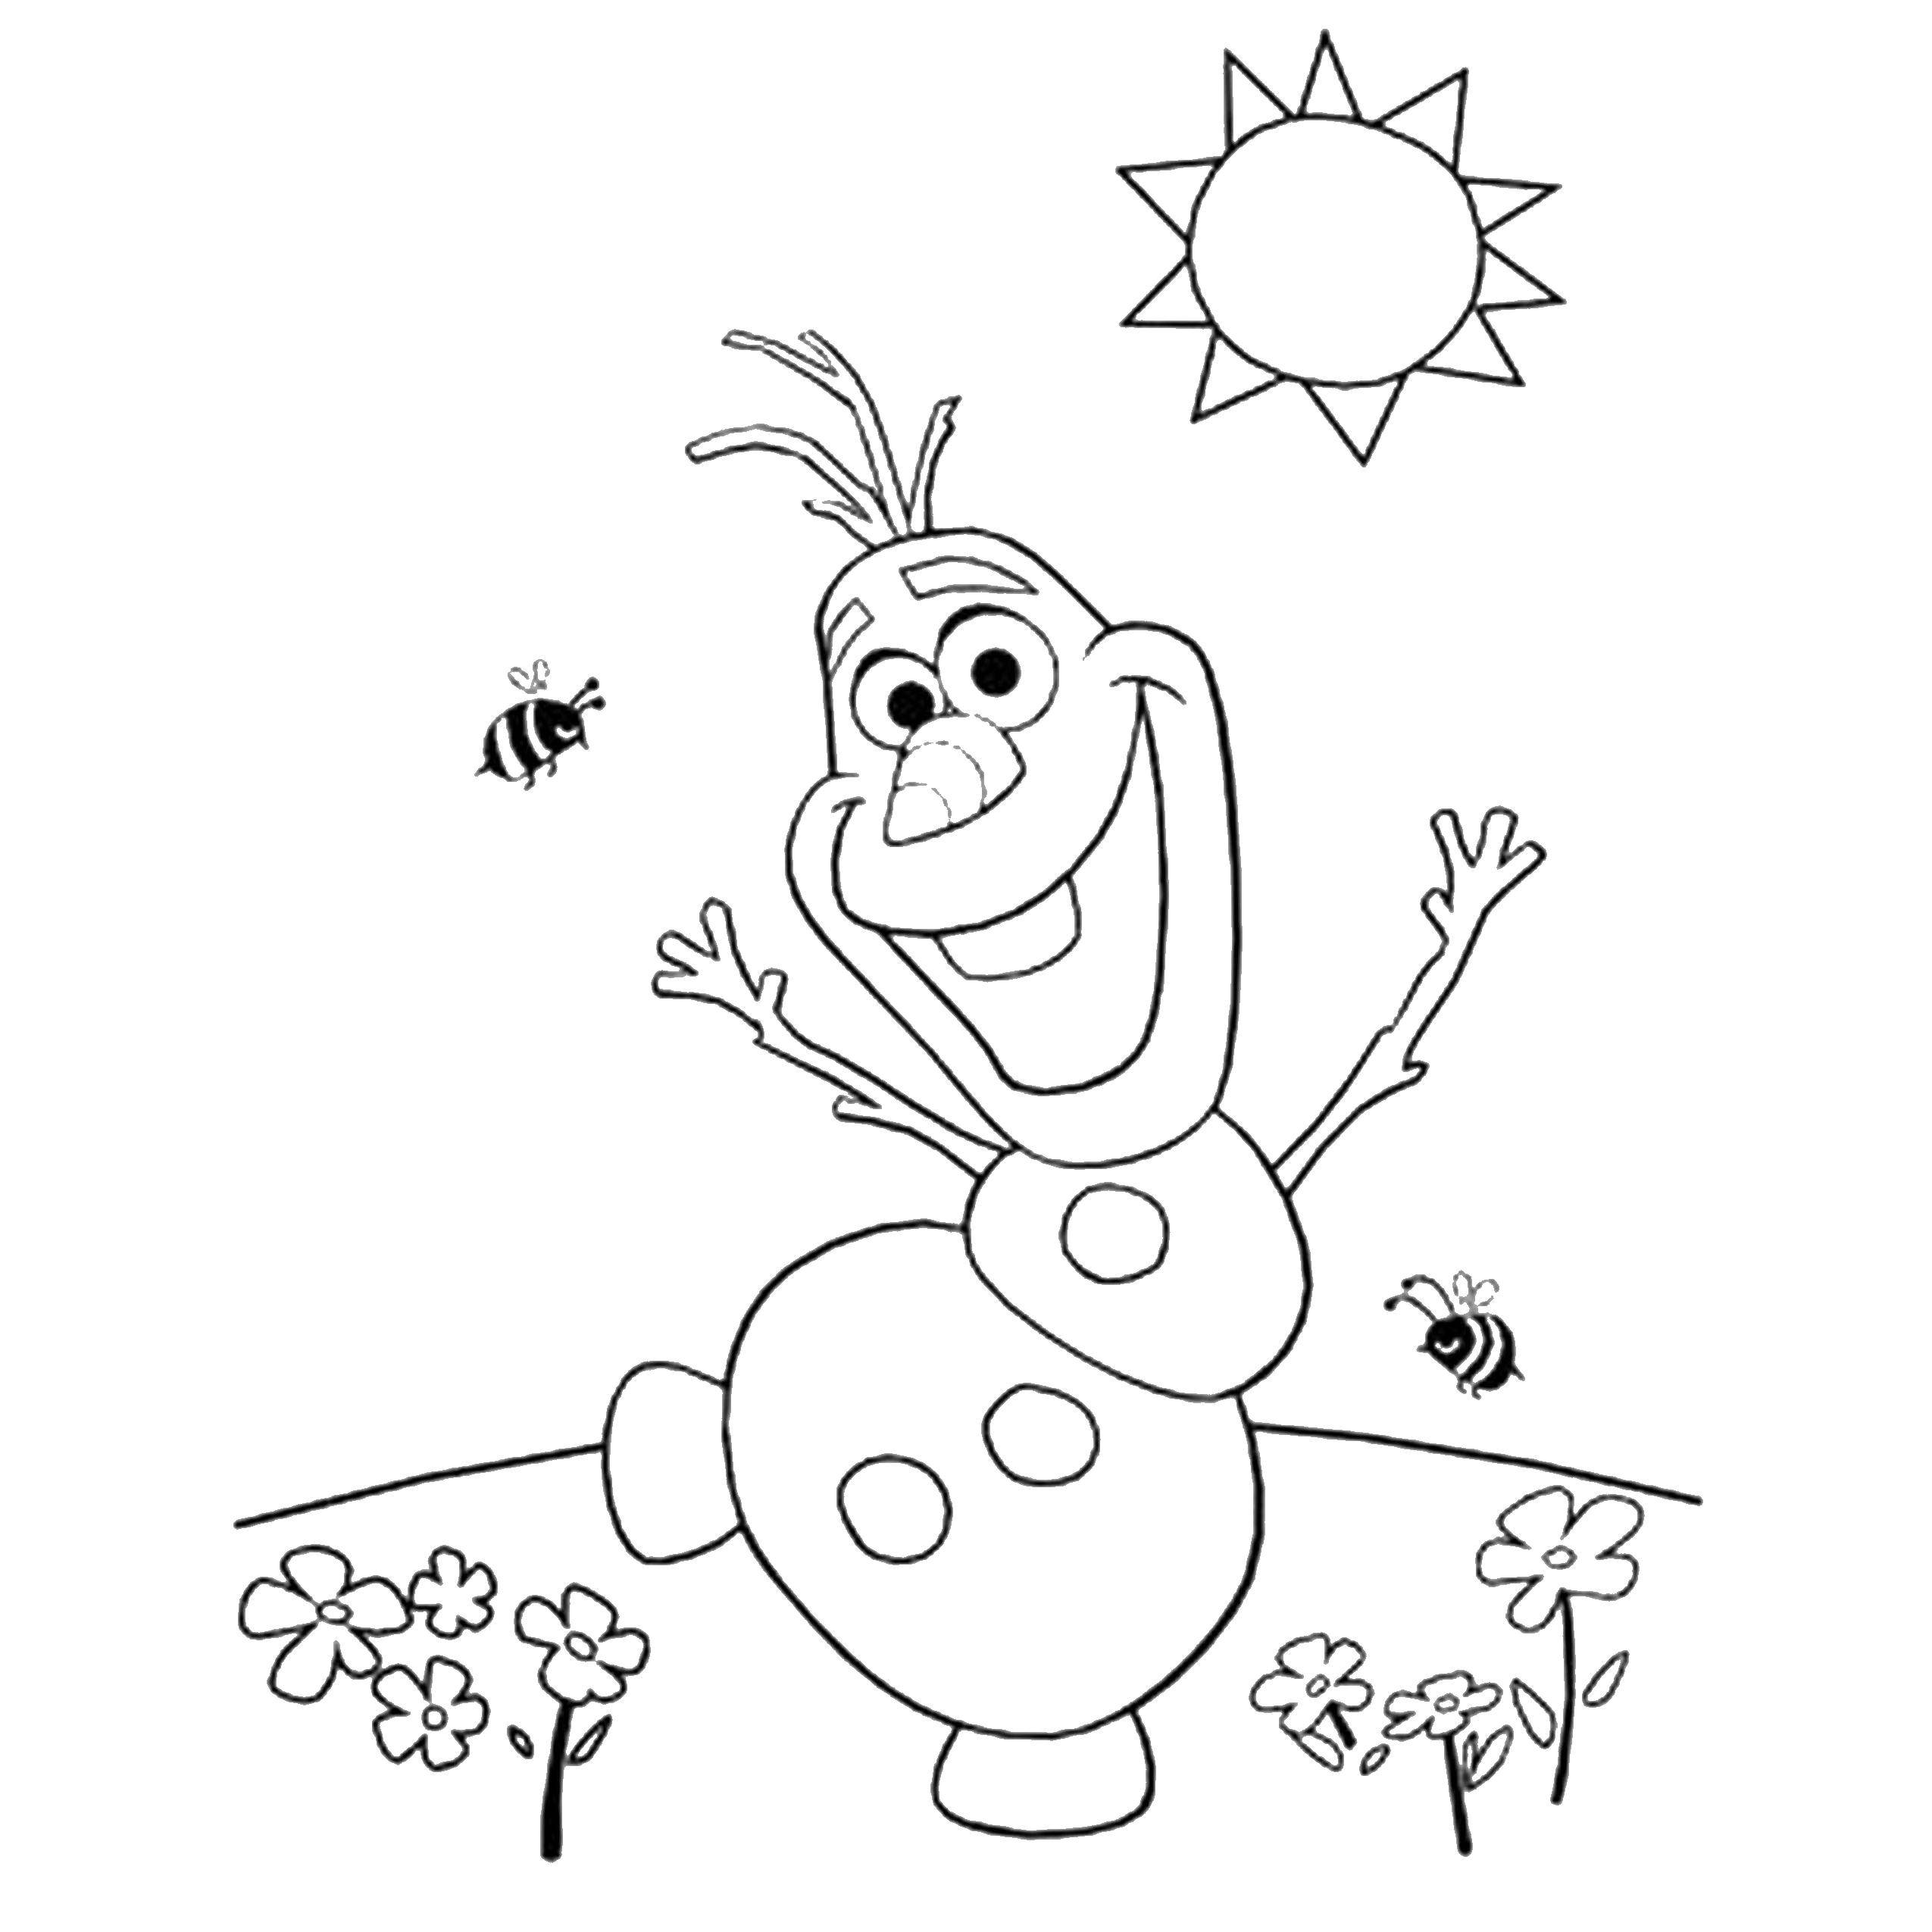 Название: Раскраска Снеговик олаф. Категория: Персонаж из мультфильма. Теги: снеговик Олаф, холодное сердце.